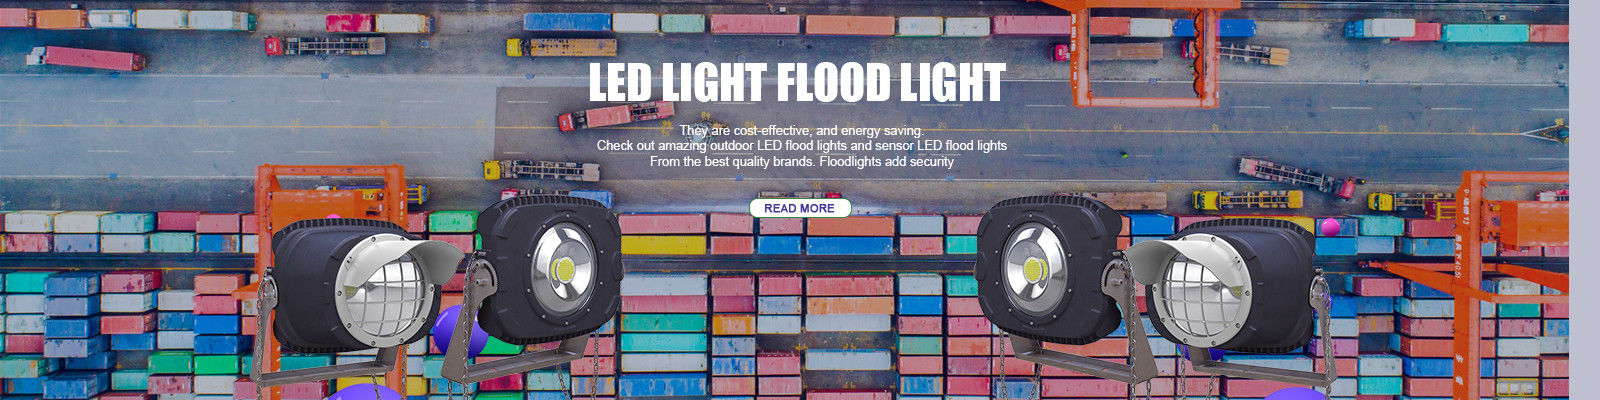 Luz de inundação exterior do diodo emissor de luz